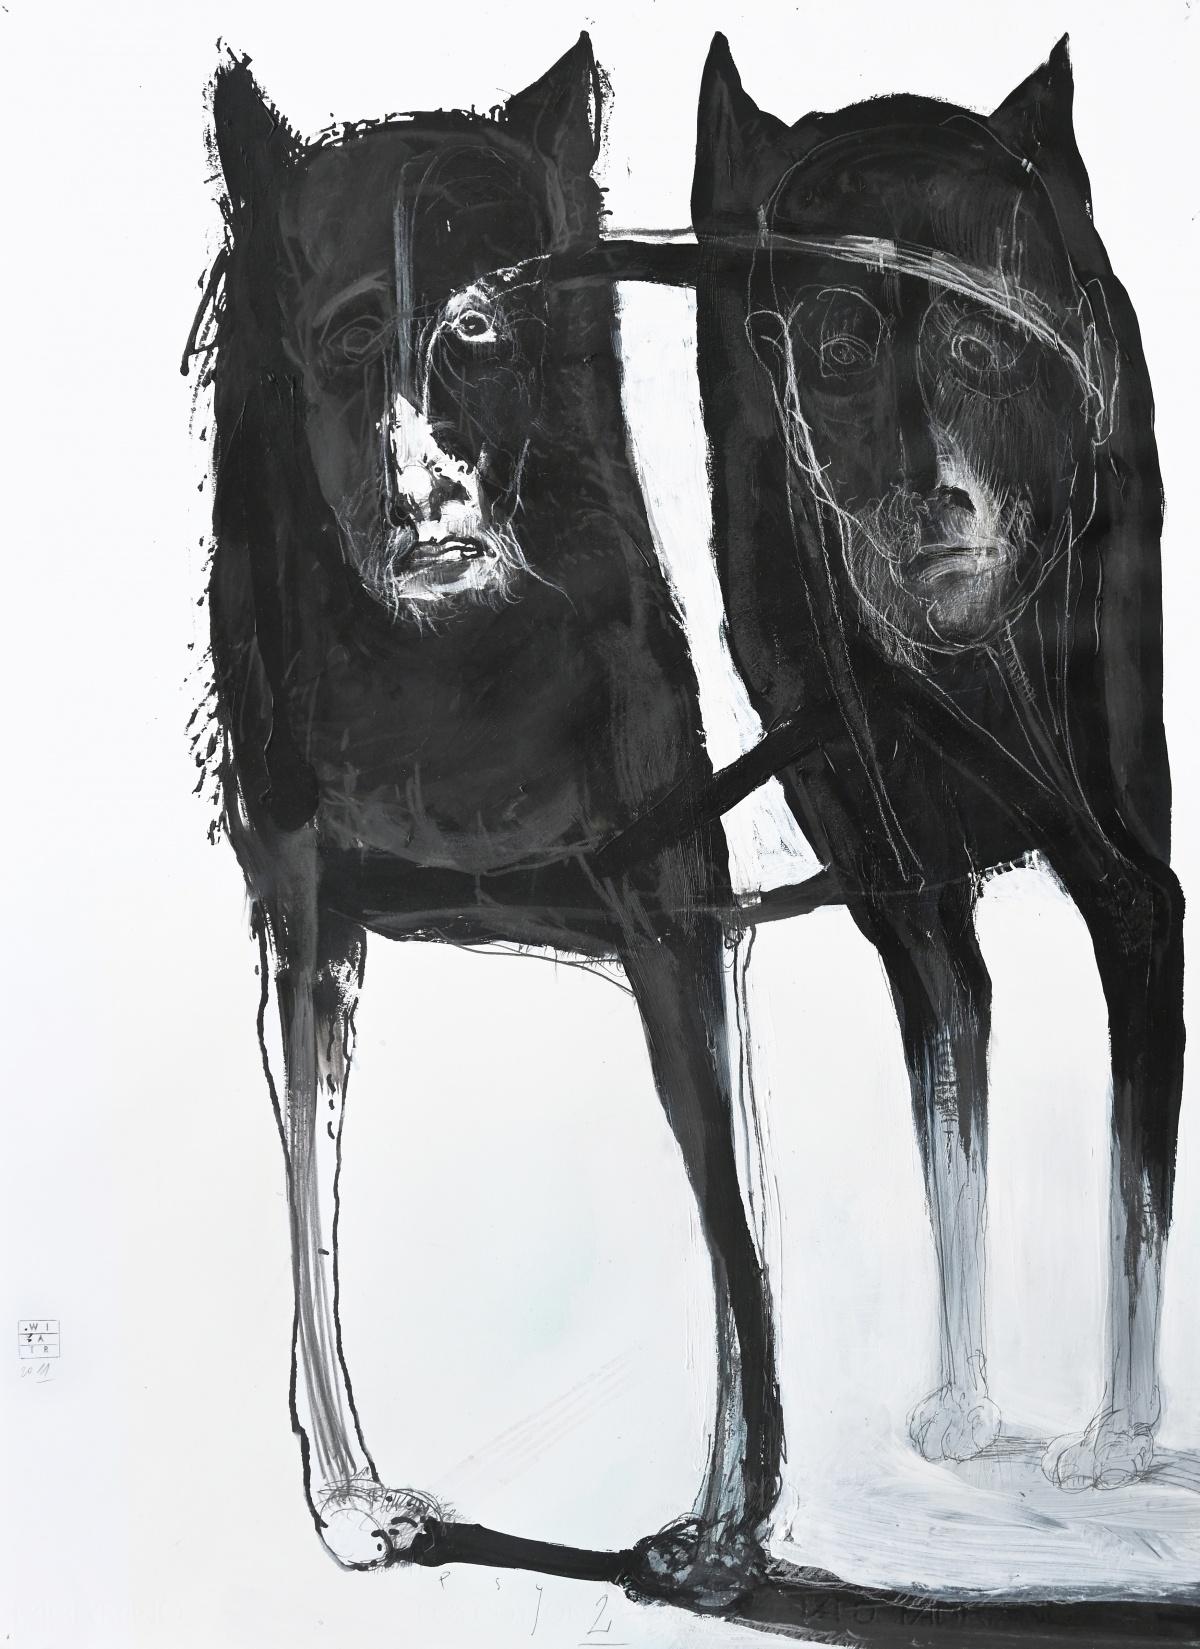 Dessins contemporains « Dogs 2 », dessin figuratif, noir et blanc, artiste polonais